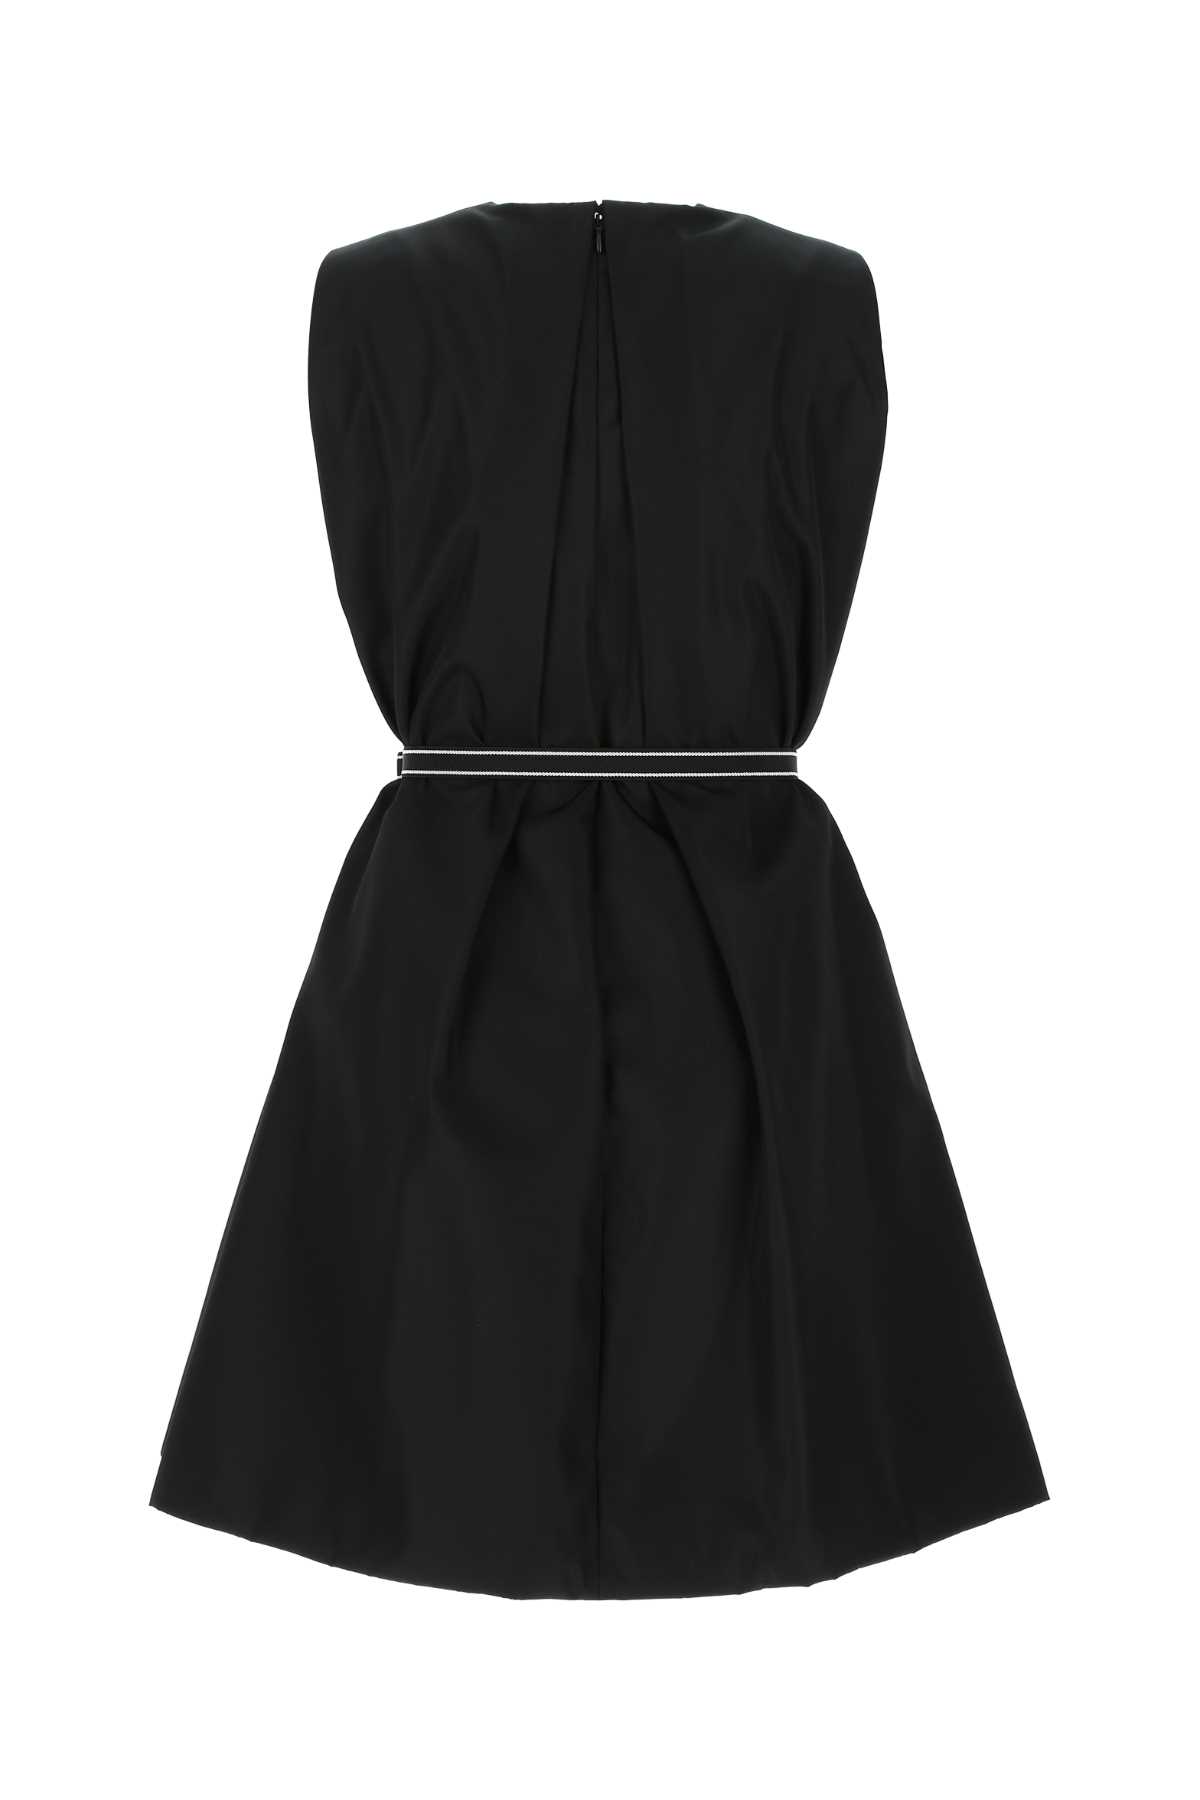 Prada Black Nylon Dress In F0002